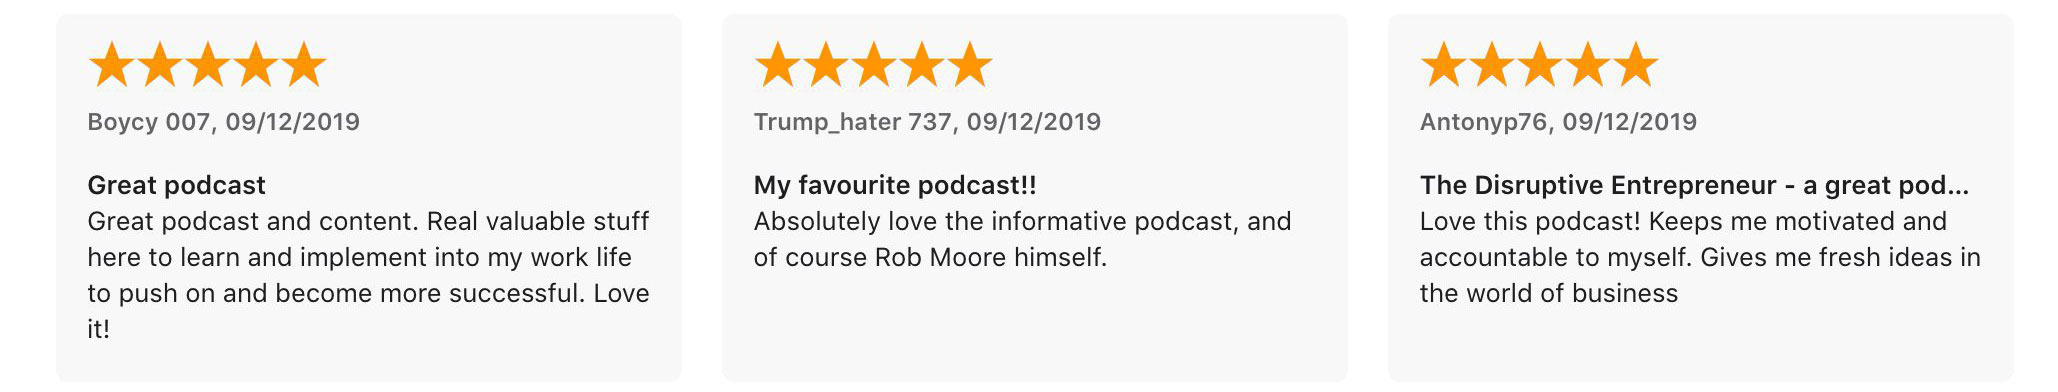 podcast-reviews9